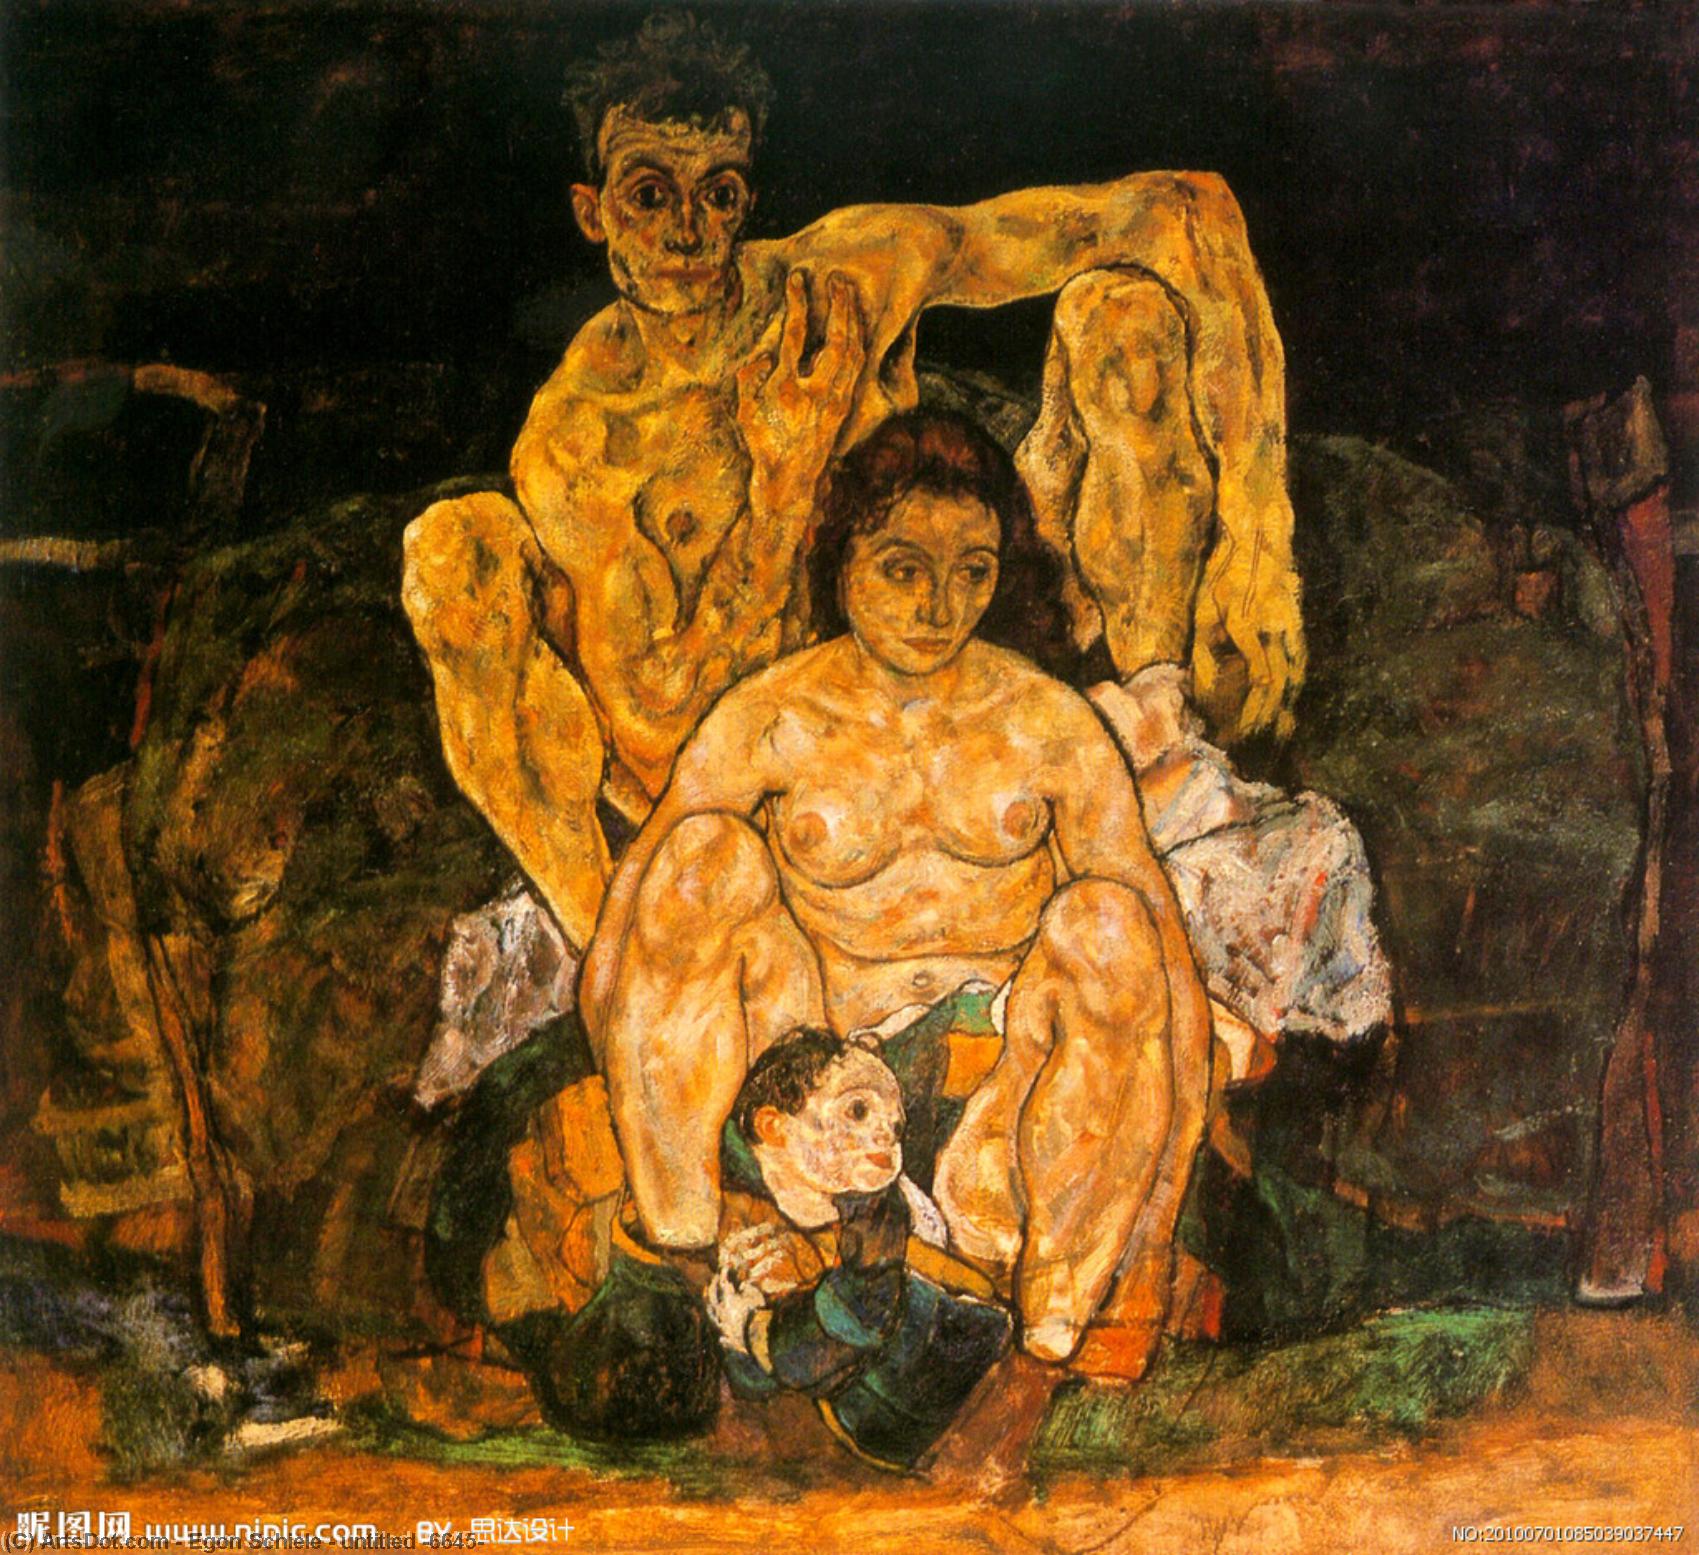 WikiOO.org - Encyclopedia of Fine Arts - Målning, konstverk Egon Schiele - untitled (6645)